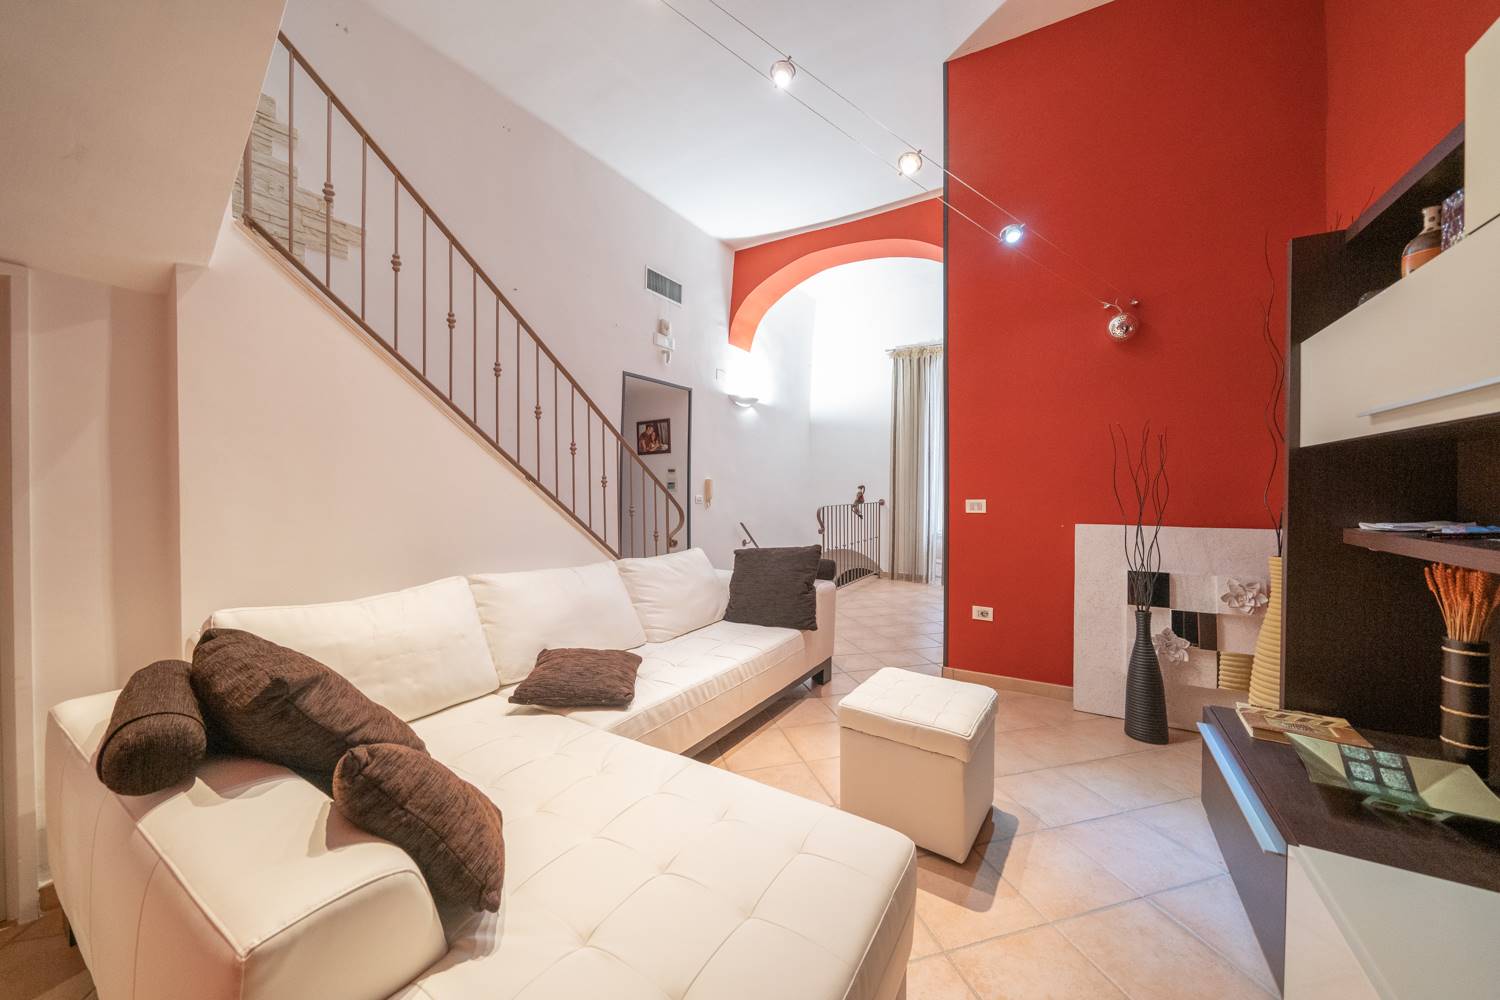 Appartamento in vendita a Palo del Colle, 3 locali, prezzo € 130.000 | PortaleAgenzieImmobiliari.it